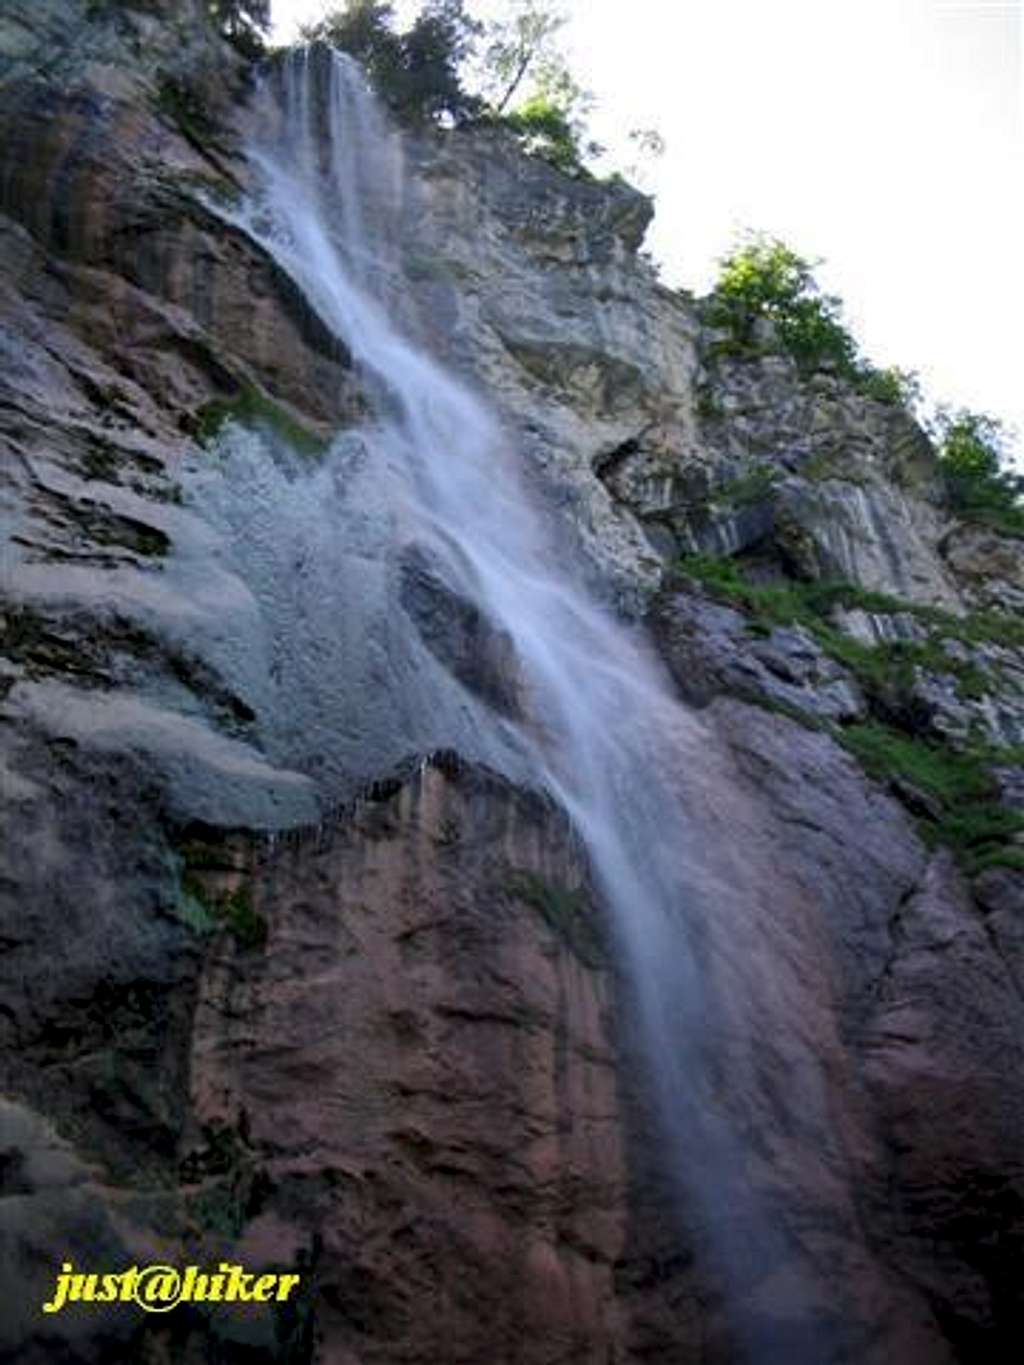 Skakavac waterfall